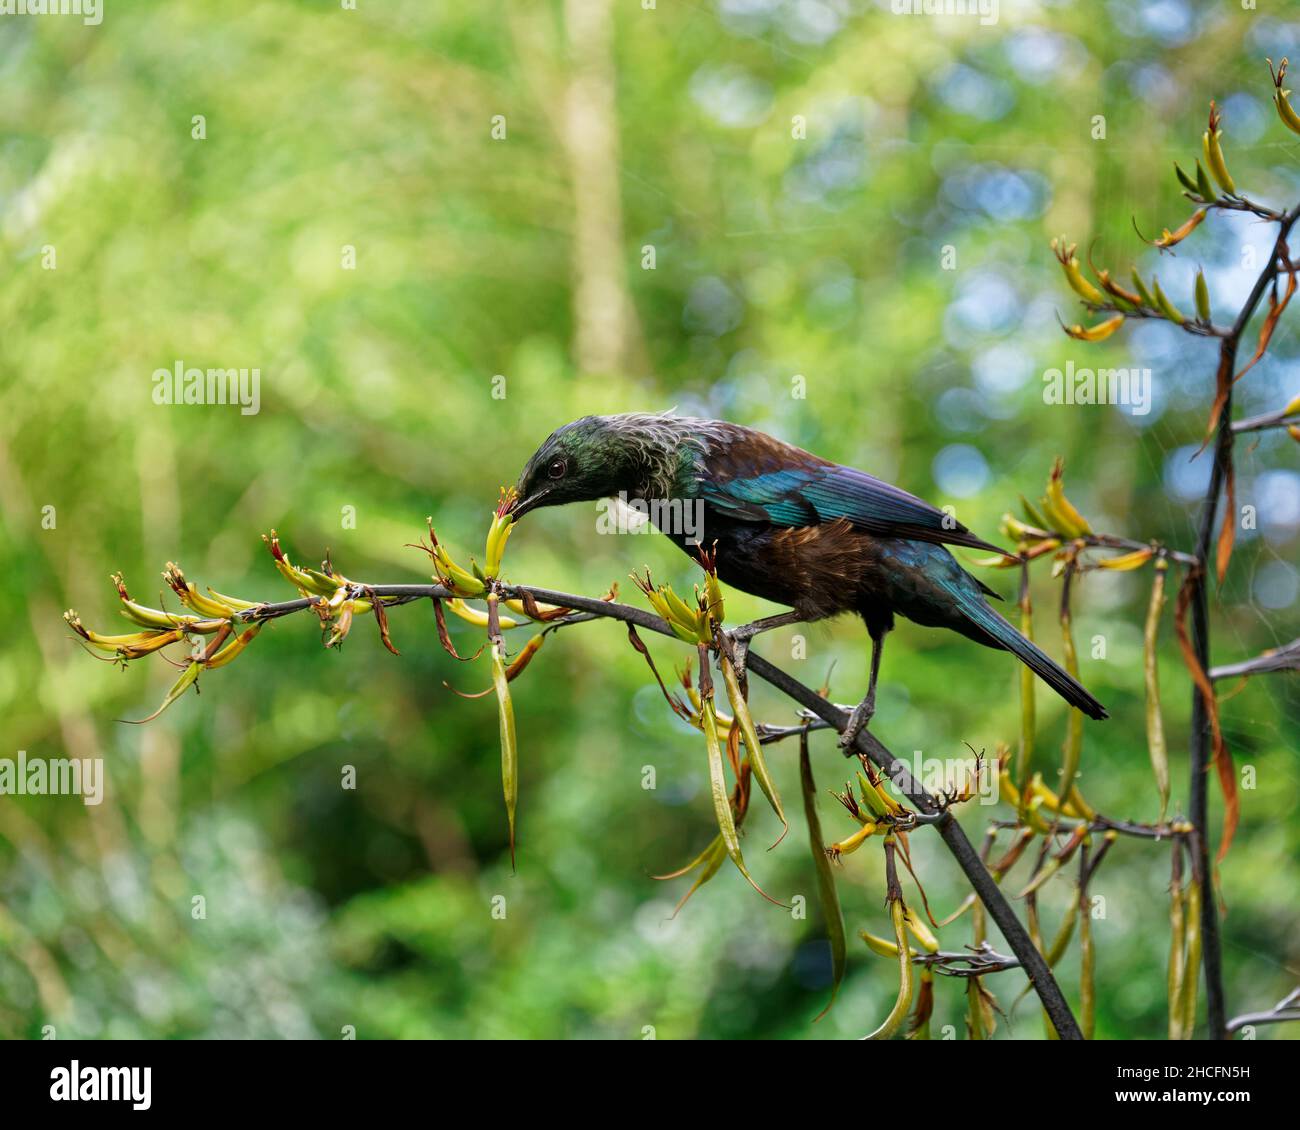 TUI, oiseau de passereau endémique de Nouvelle-Zélande, se nourrissant du nectar de lin.L'étamine de fleur dépose le pollen orange sur sa tête. Banque D'Images